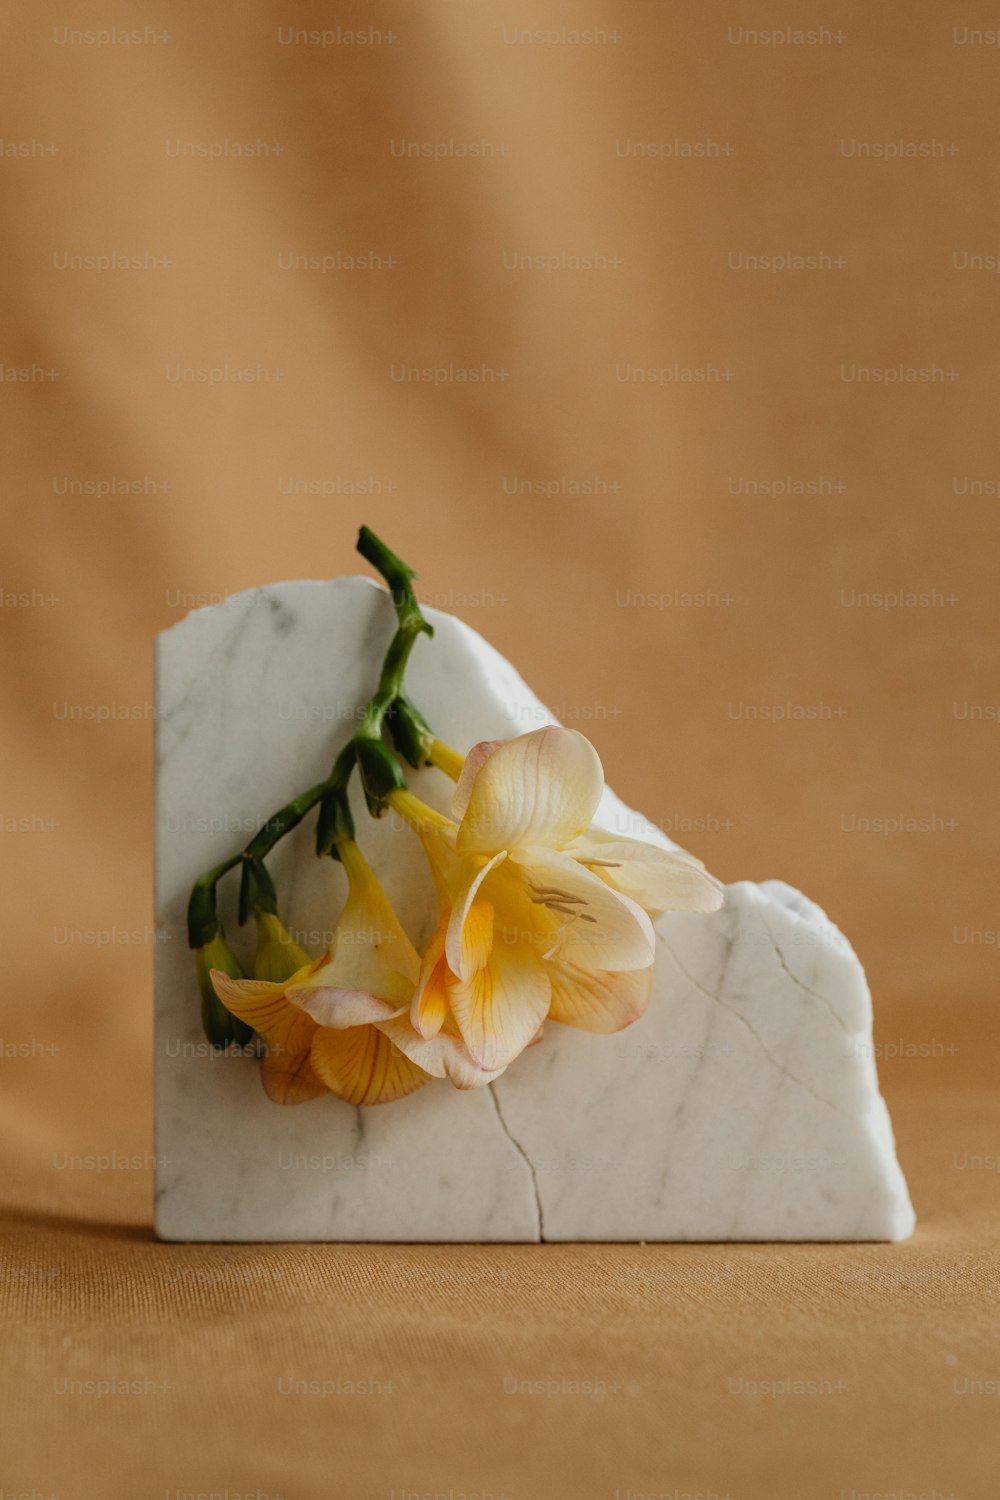 Un bloque de mármol blanco con una flor amarilla